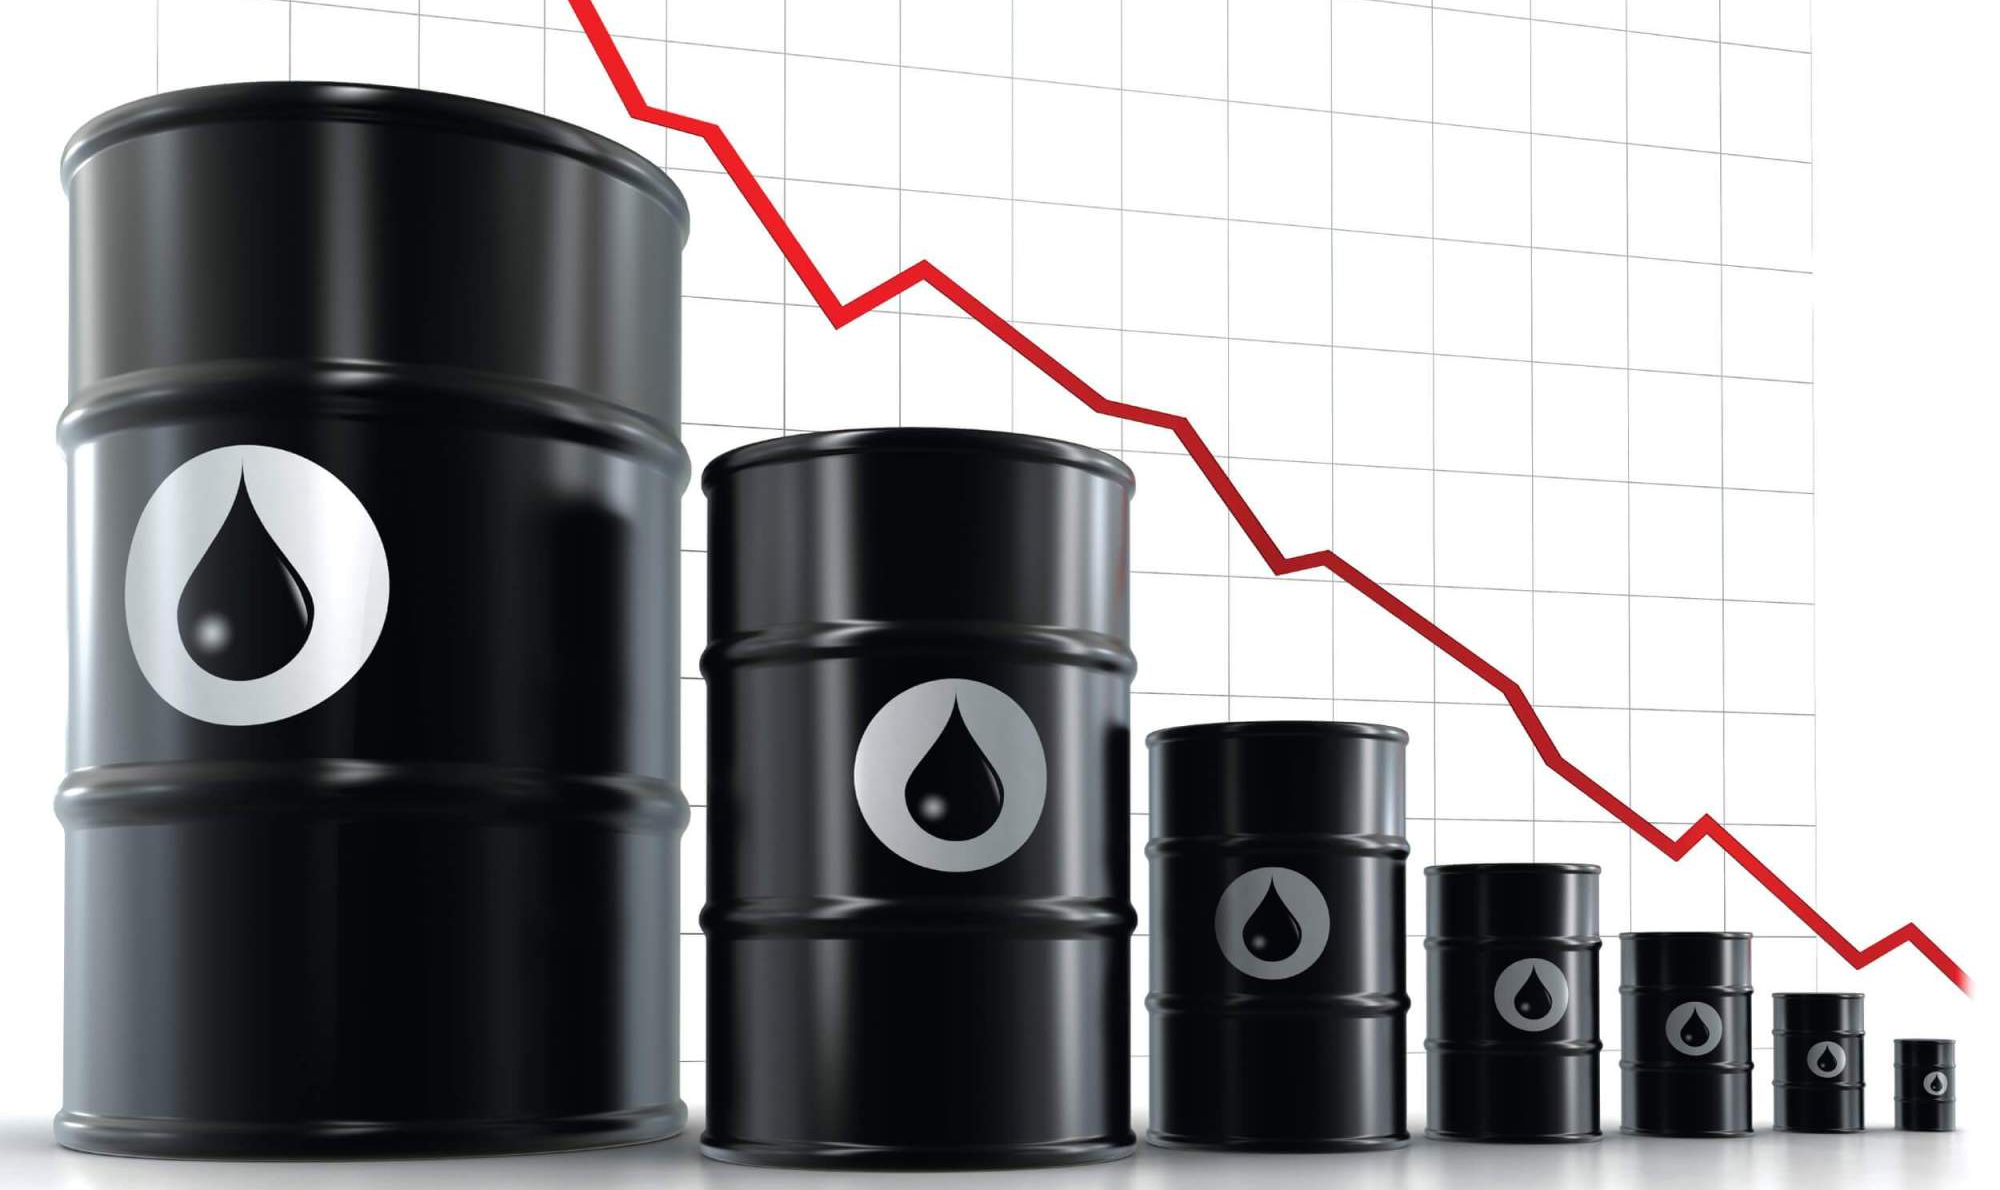 O preço de um barril caiu 30% em um dia, o maior colapso desde 1991 na Guerra do Golfo. O que explica esse declínio?